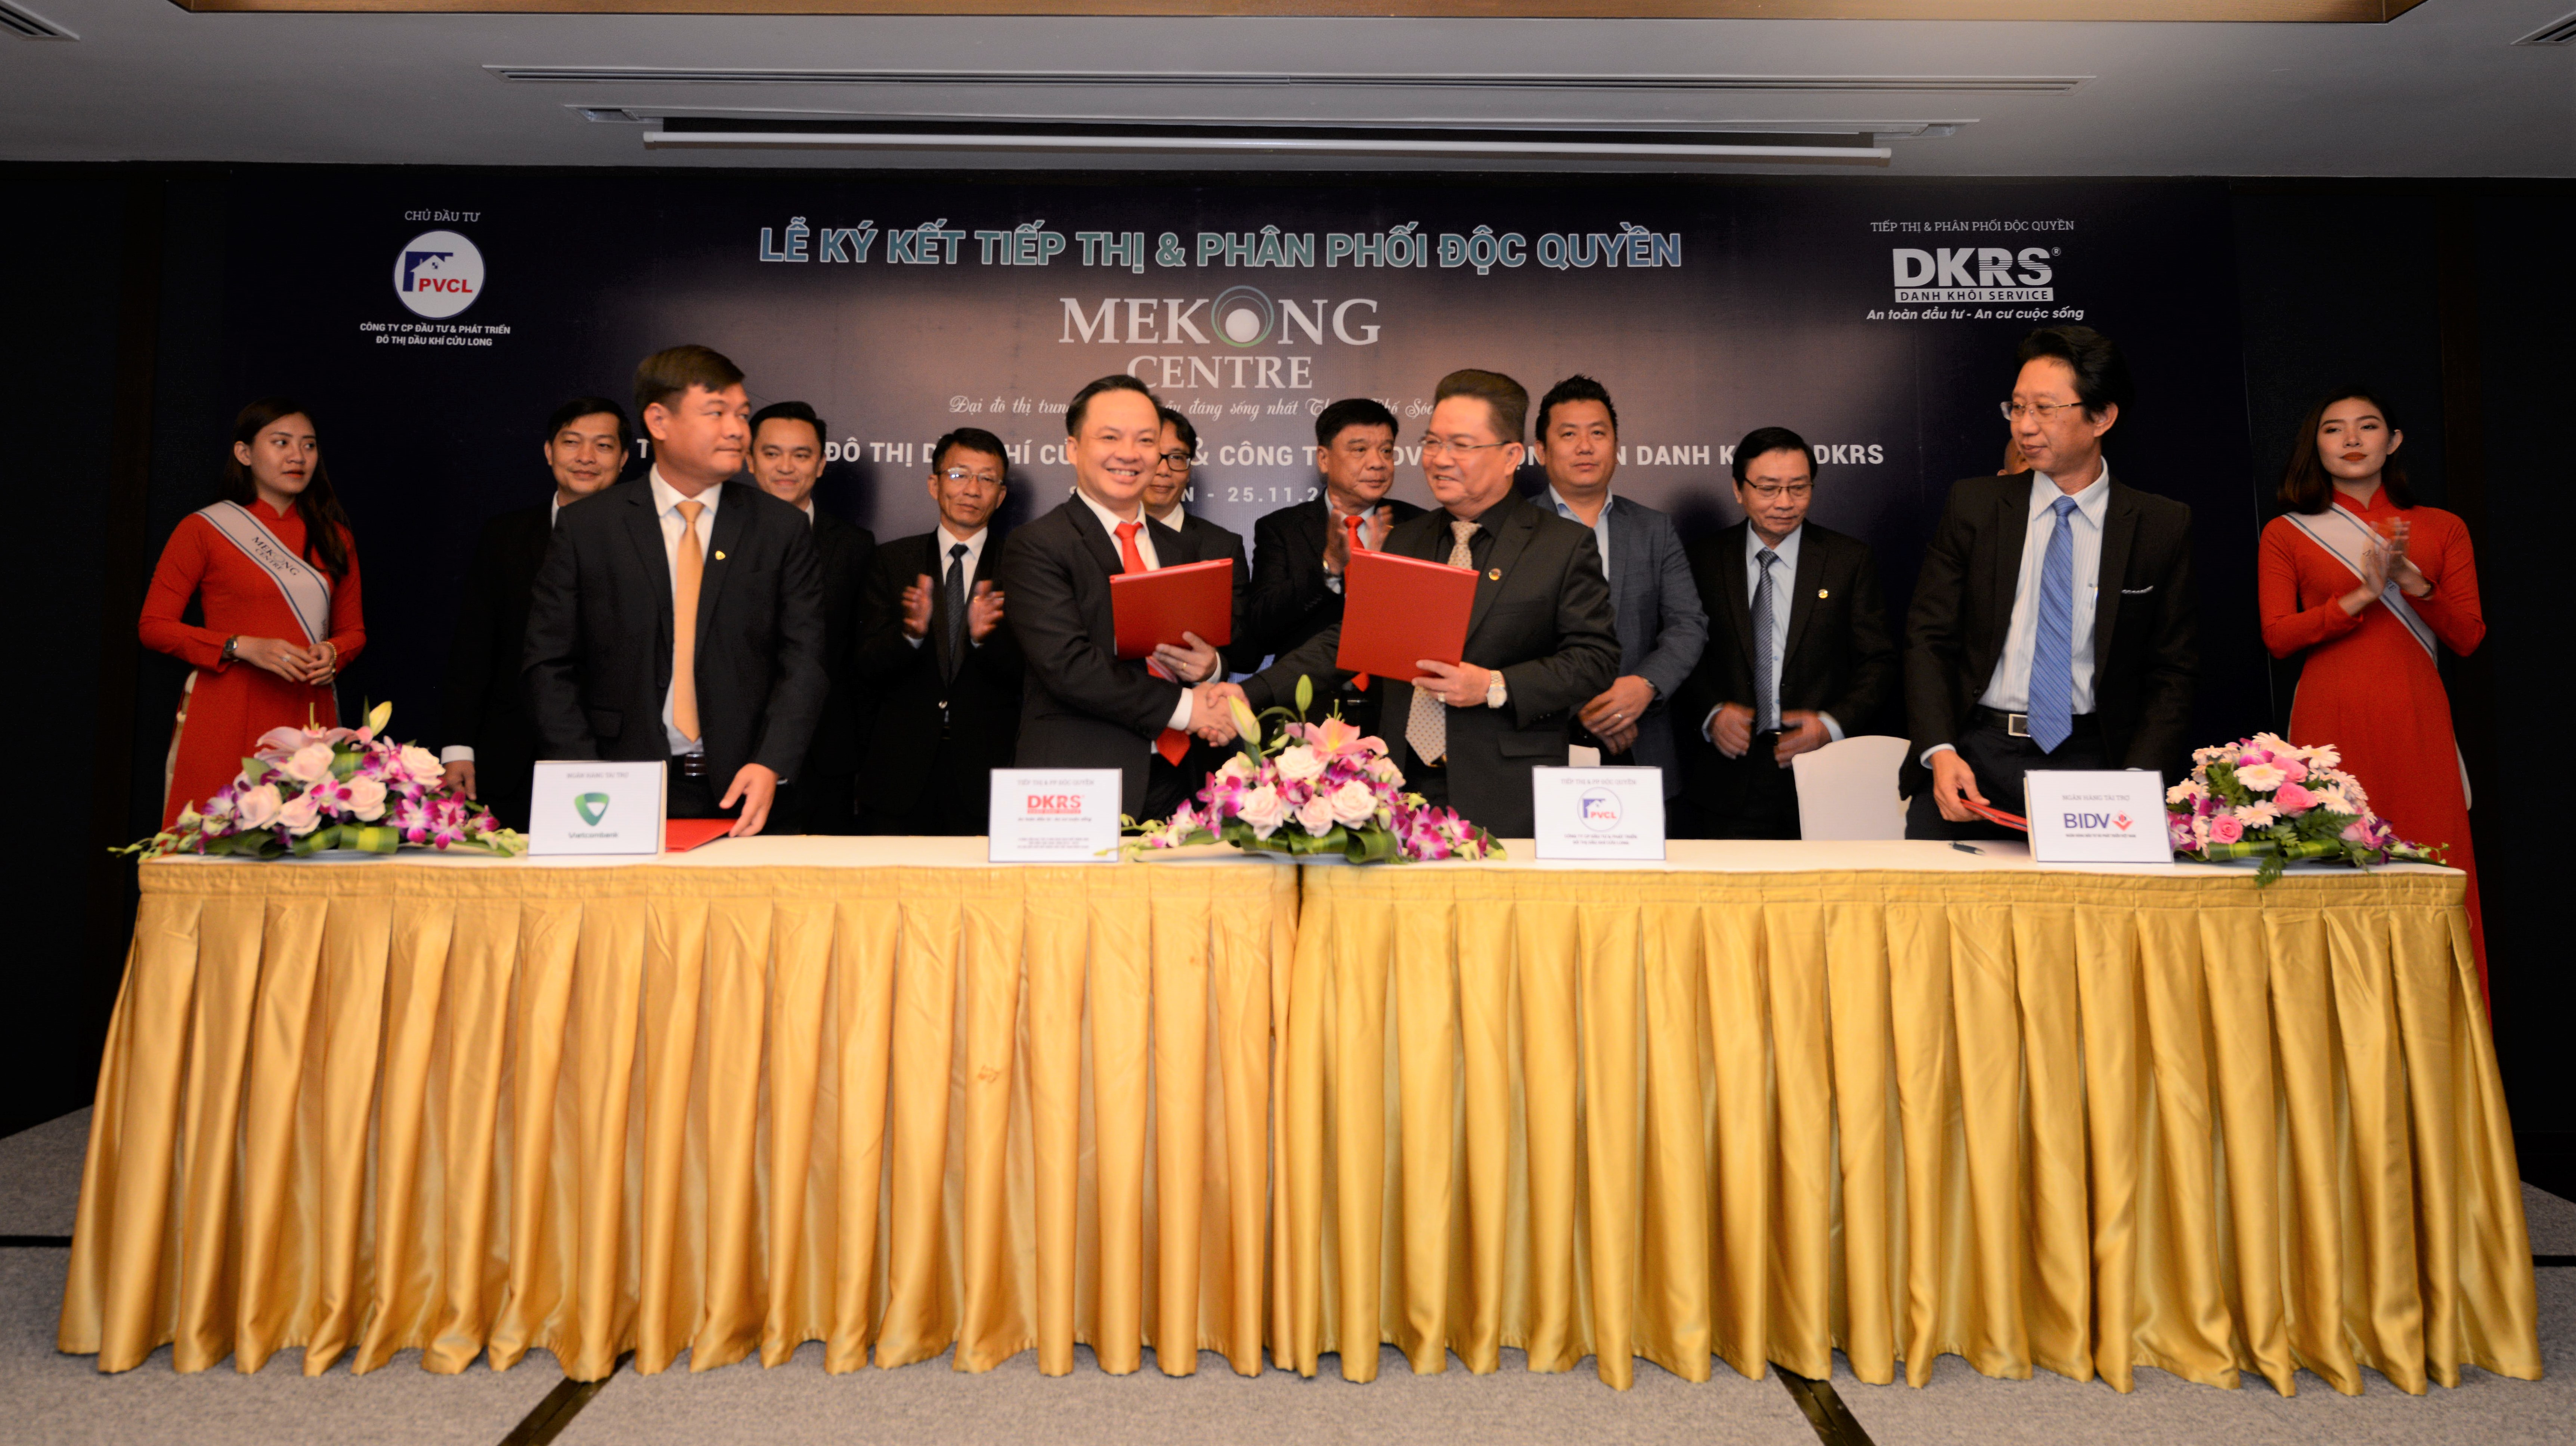 DKRS phân phối độc quyền dự án Mekong Centre